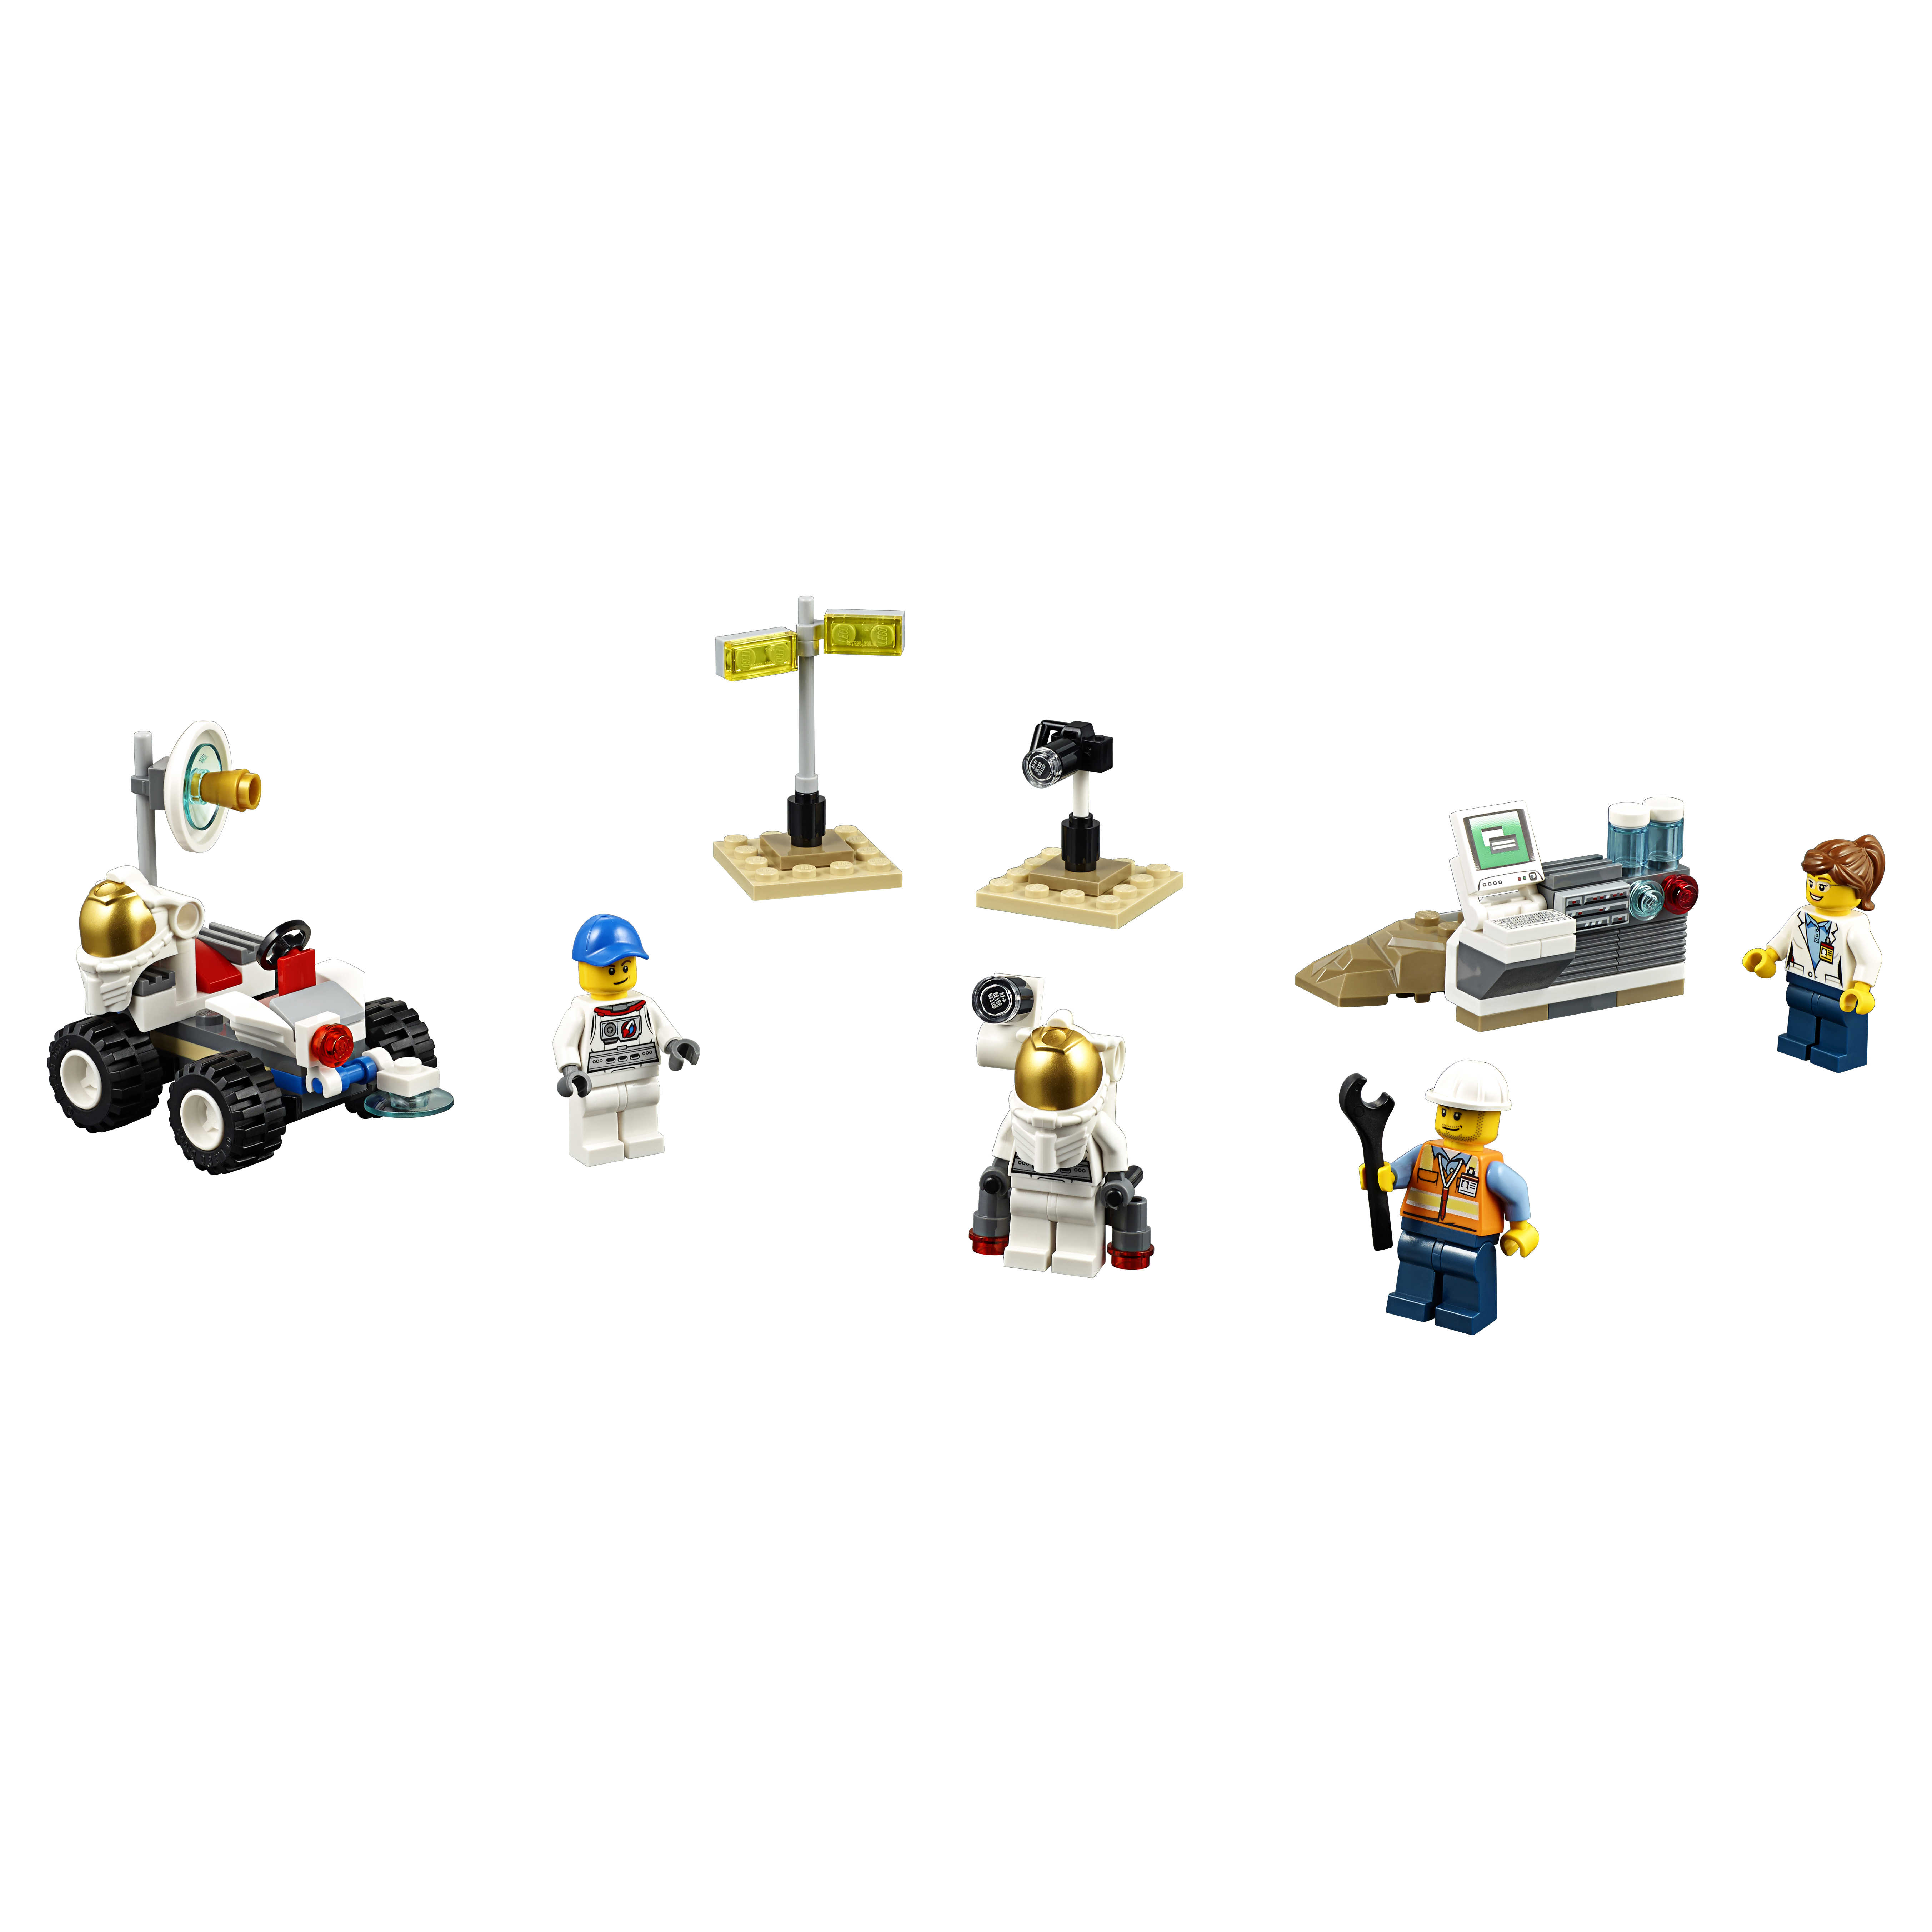 Конструктор LEGO City Space Port Набор для начинающих Космос (60077) конструктор lego classic 11006 синий набор для конструирования